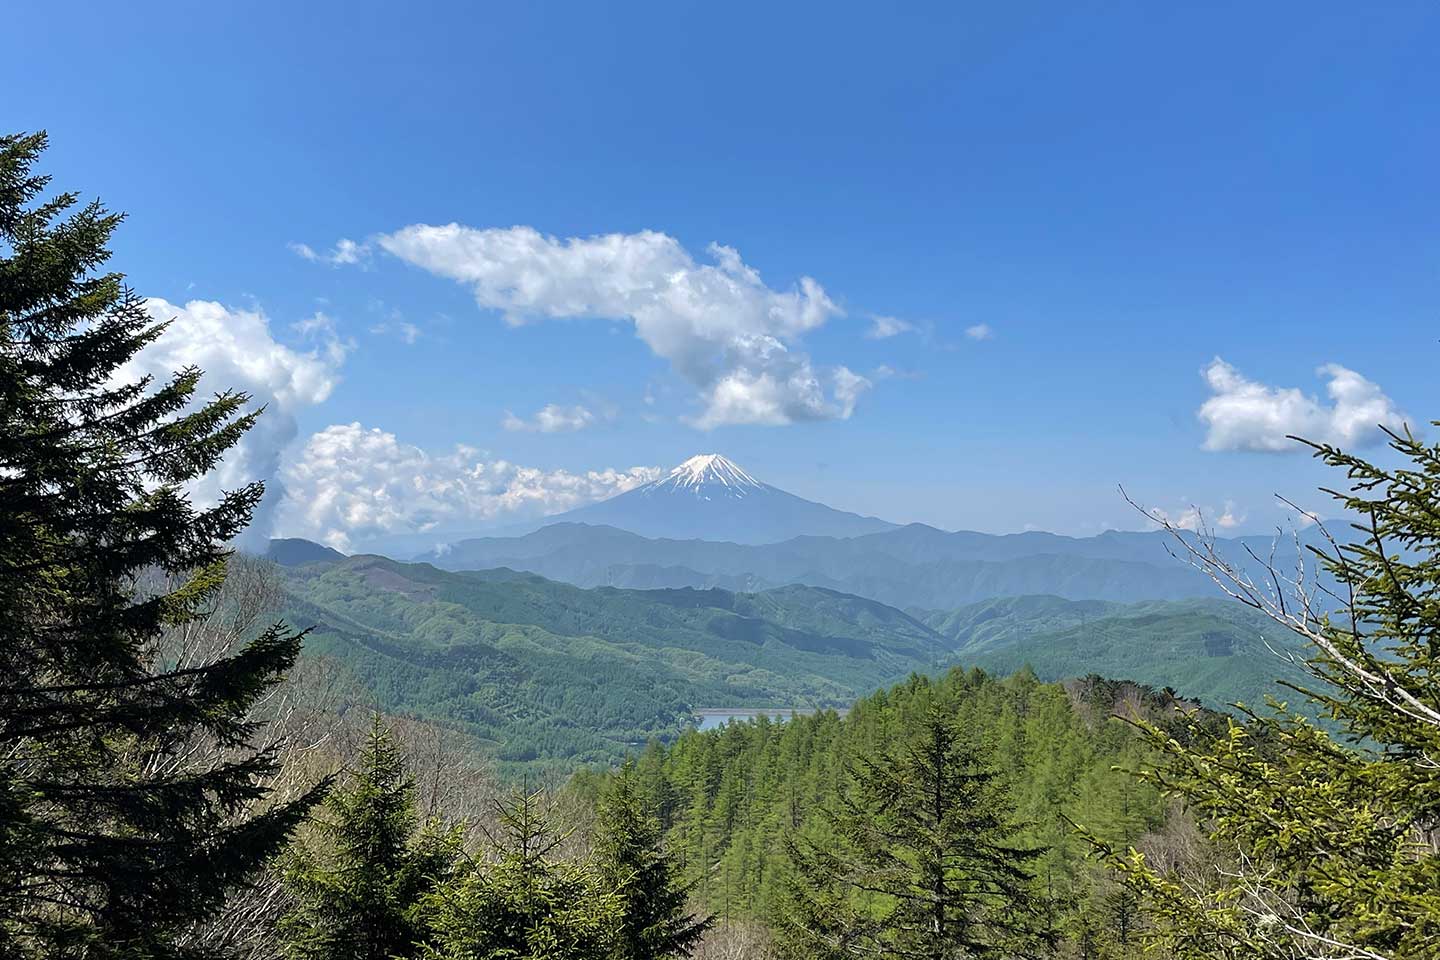 Hiking Mount Daibosatsu and Daibosatsu Pass